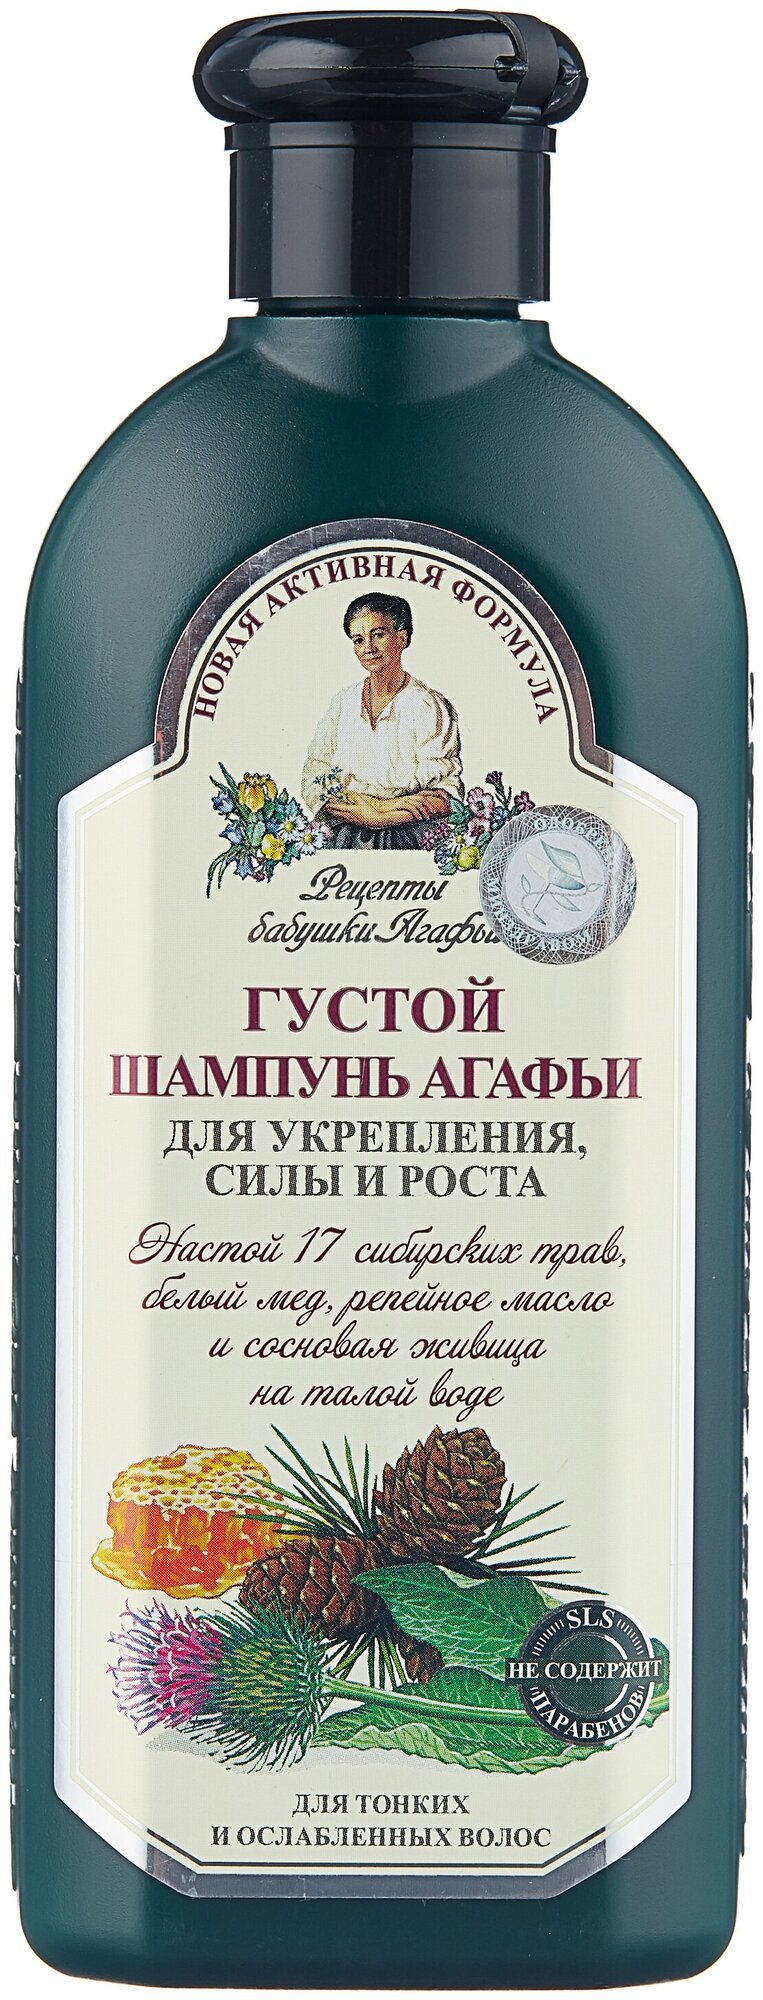 Рецепты бабушки Агафьи шампунь Агафьи Густой для укрепления силы и роста для тонких и ослабленных волос